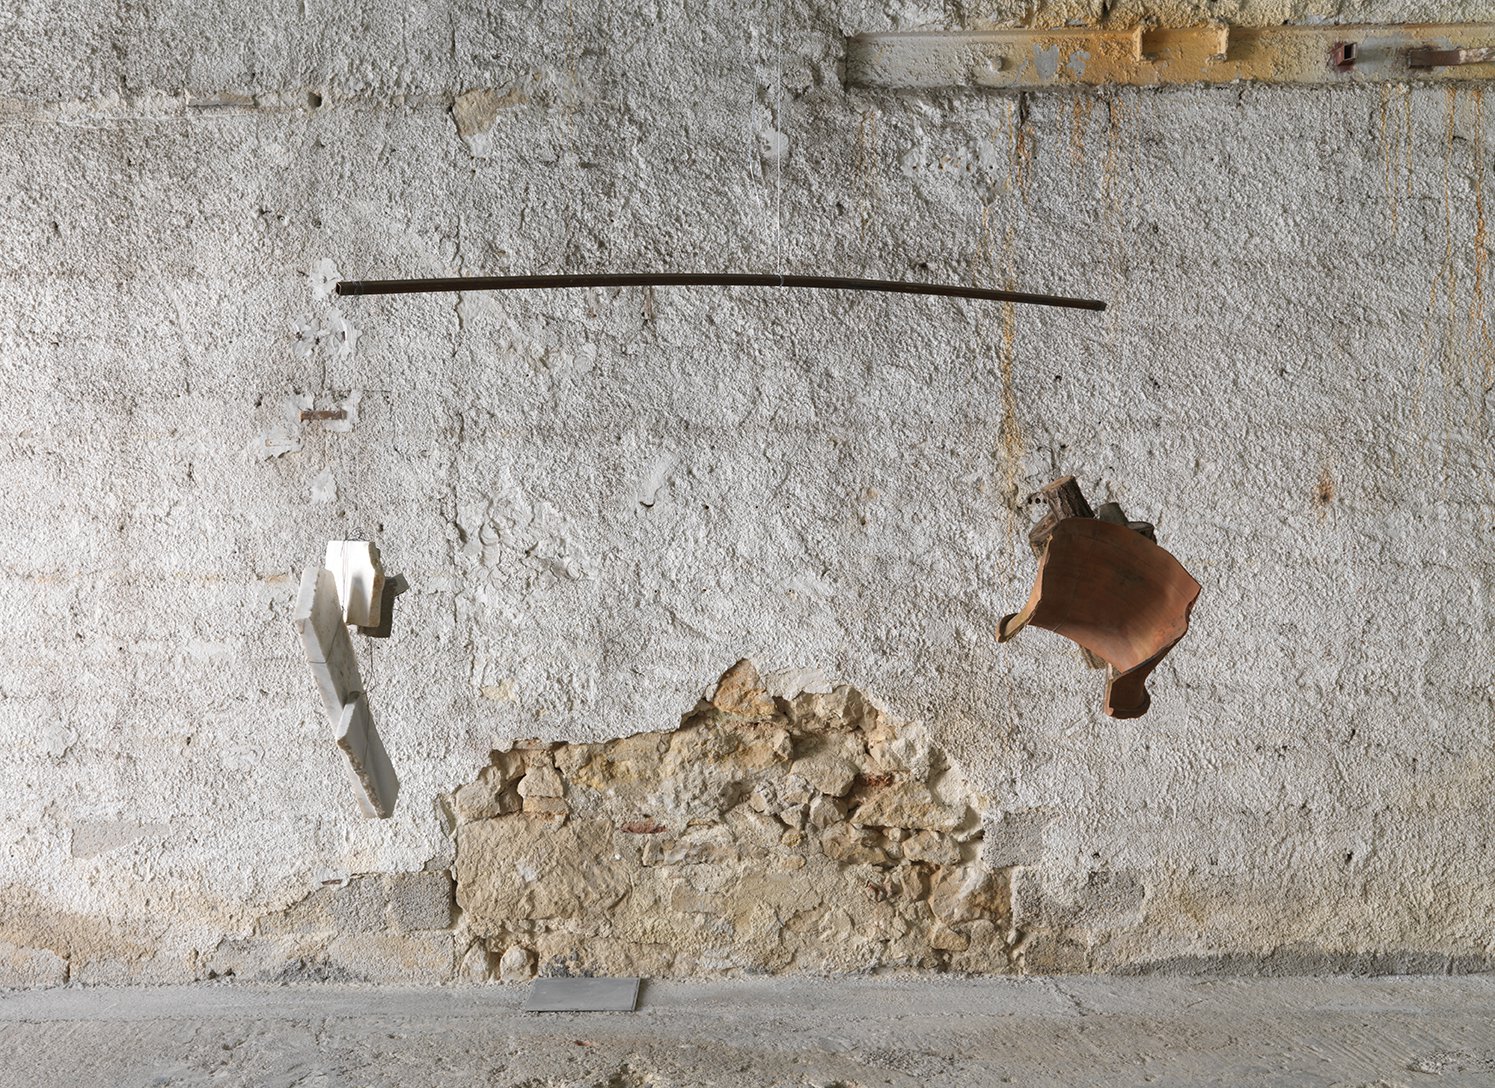 Thanasis Totsikas, The weighing, metal, wood, marble, ceramic, 200 x 95 cm, 2022. Installation view, anabasis*, Rodeo, Piraeus, 2022